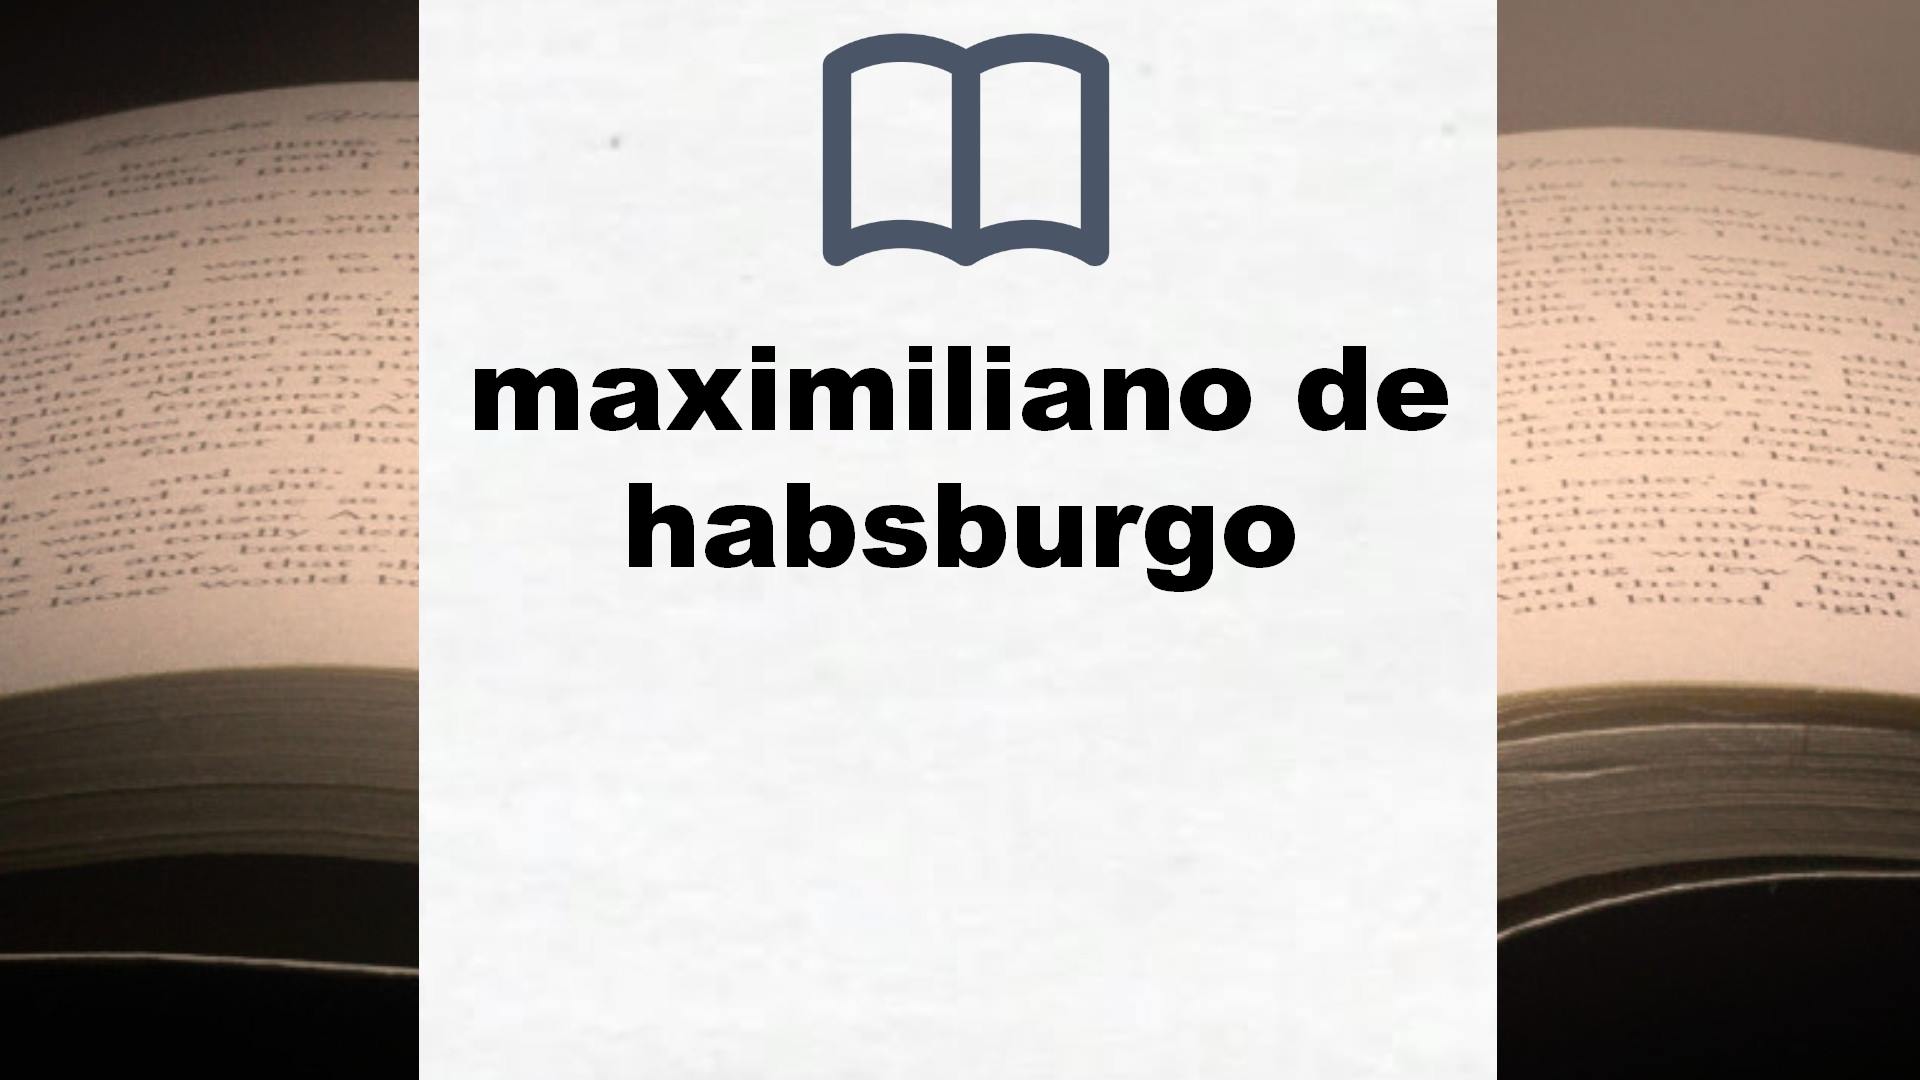 Libros sobre maximiliano de habsburgo